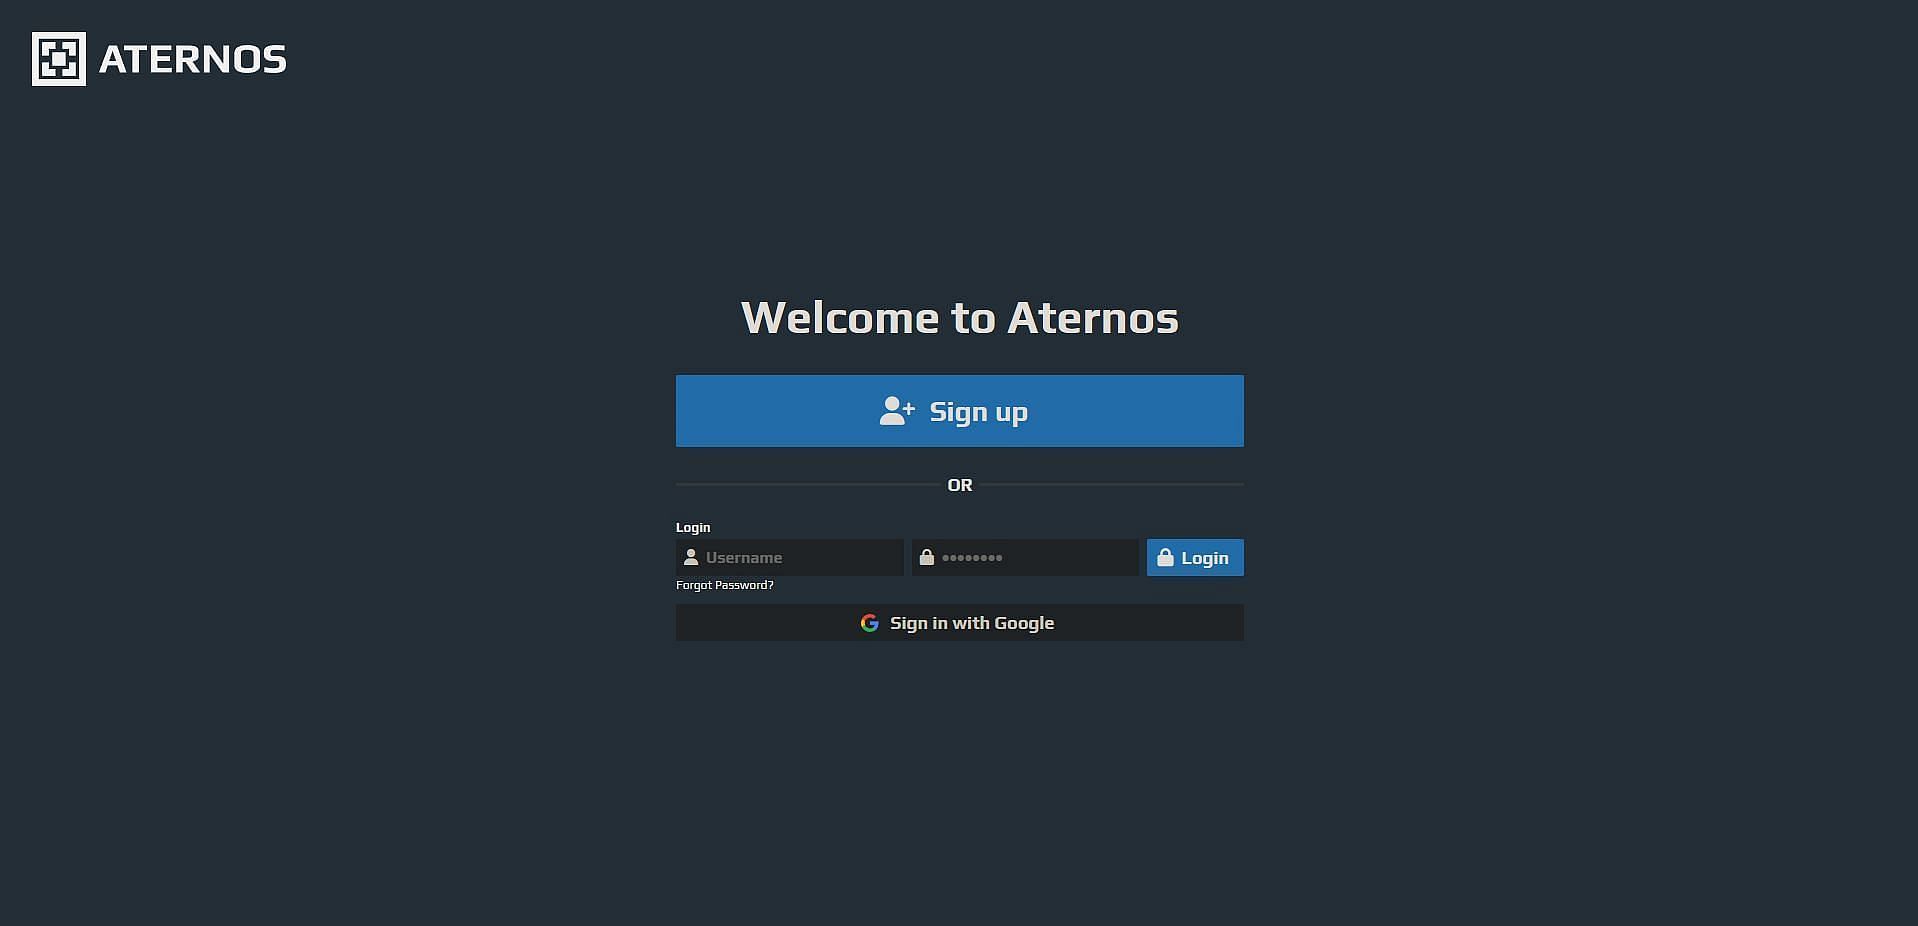 The Aternos webpage (Image via Aternos.org)